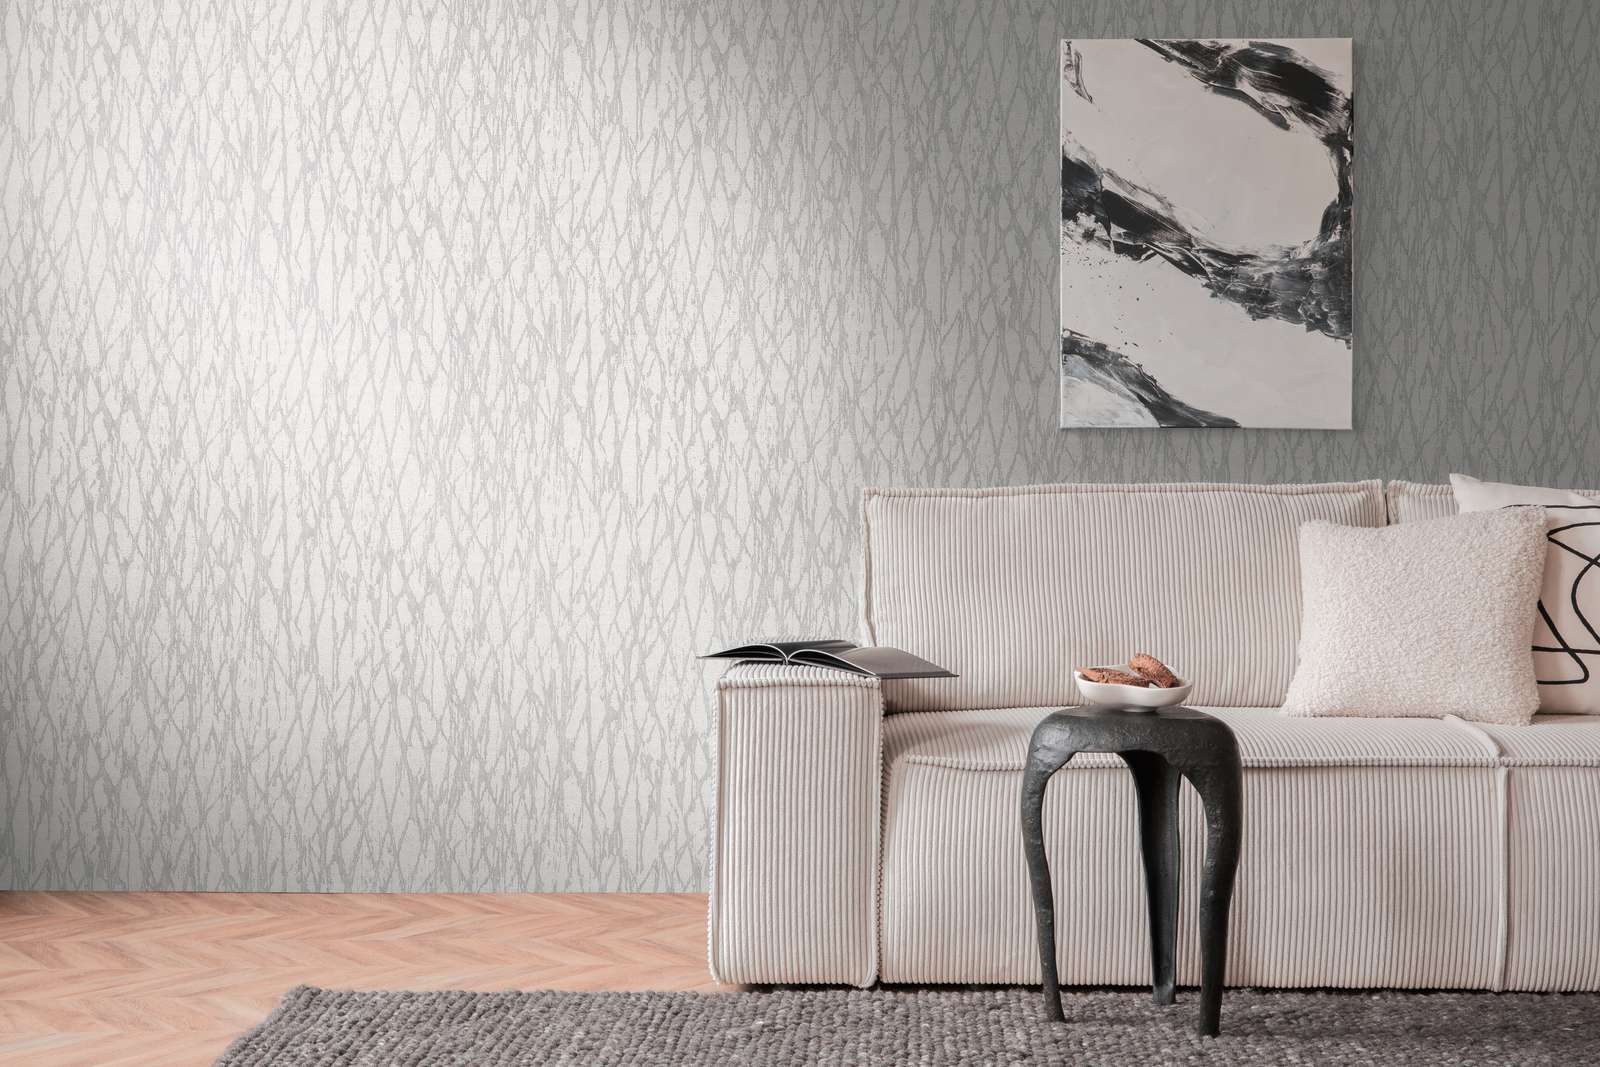             Vliestapete mit abstrakter Linien Bemusterung leicht glänzend – Weiß, Grau, Silber
        